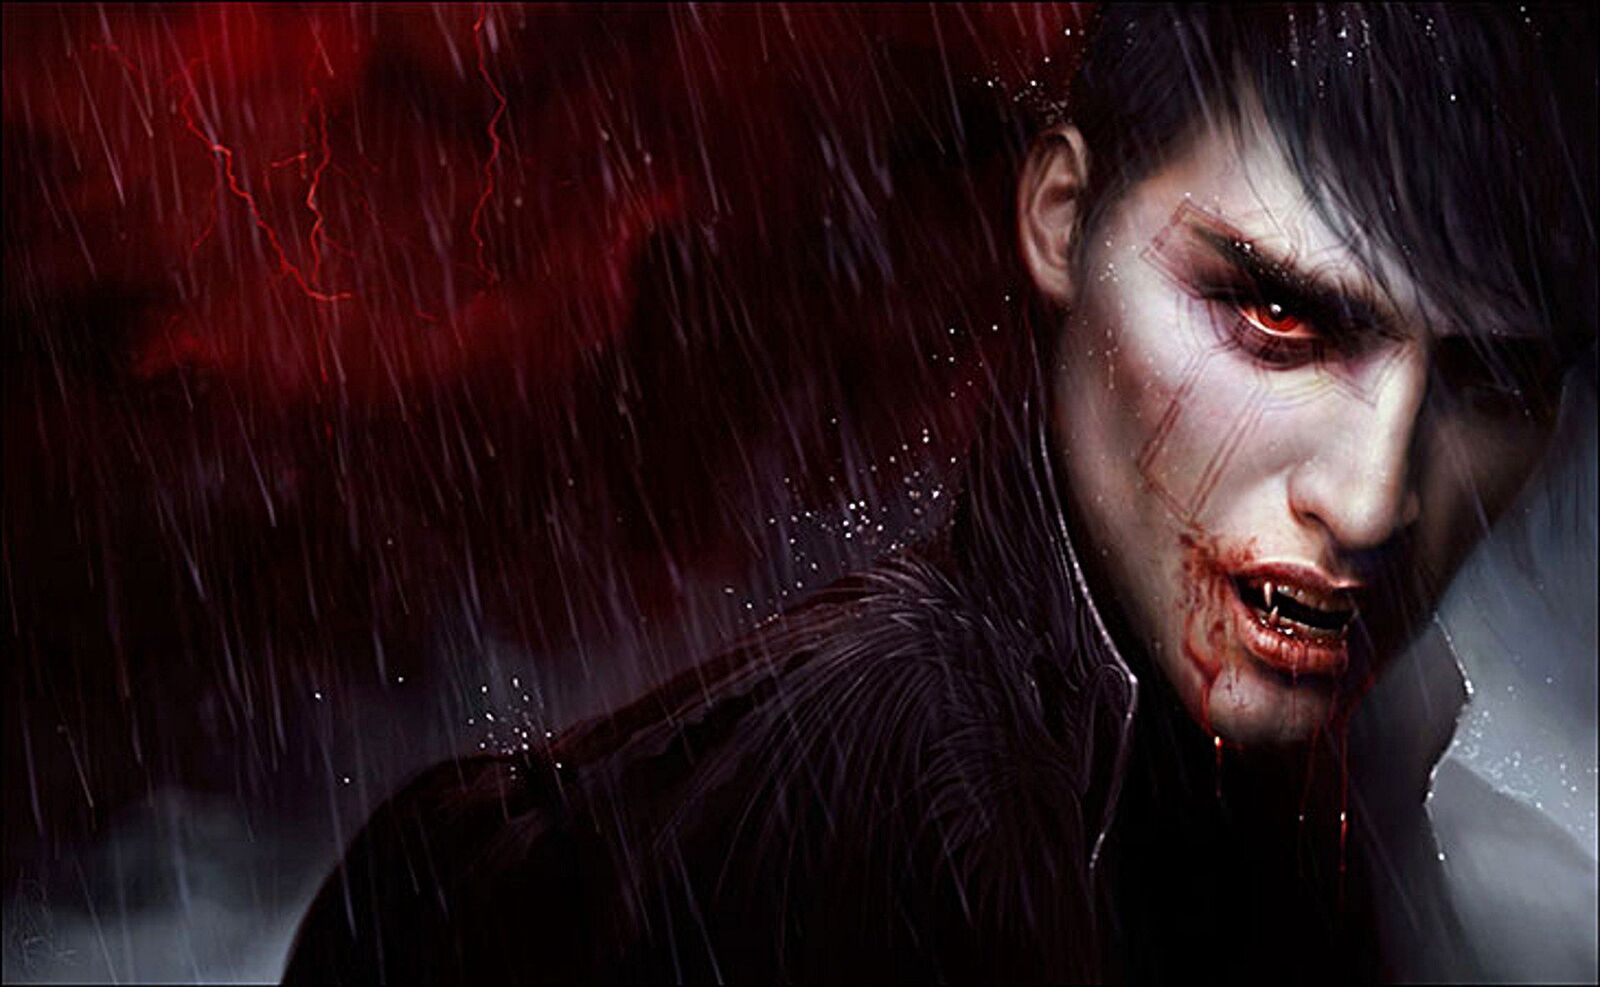 Vampire da labarun soyayya na ɗan adam mai suna vampire's kamu da ɗan adam